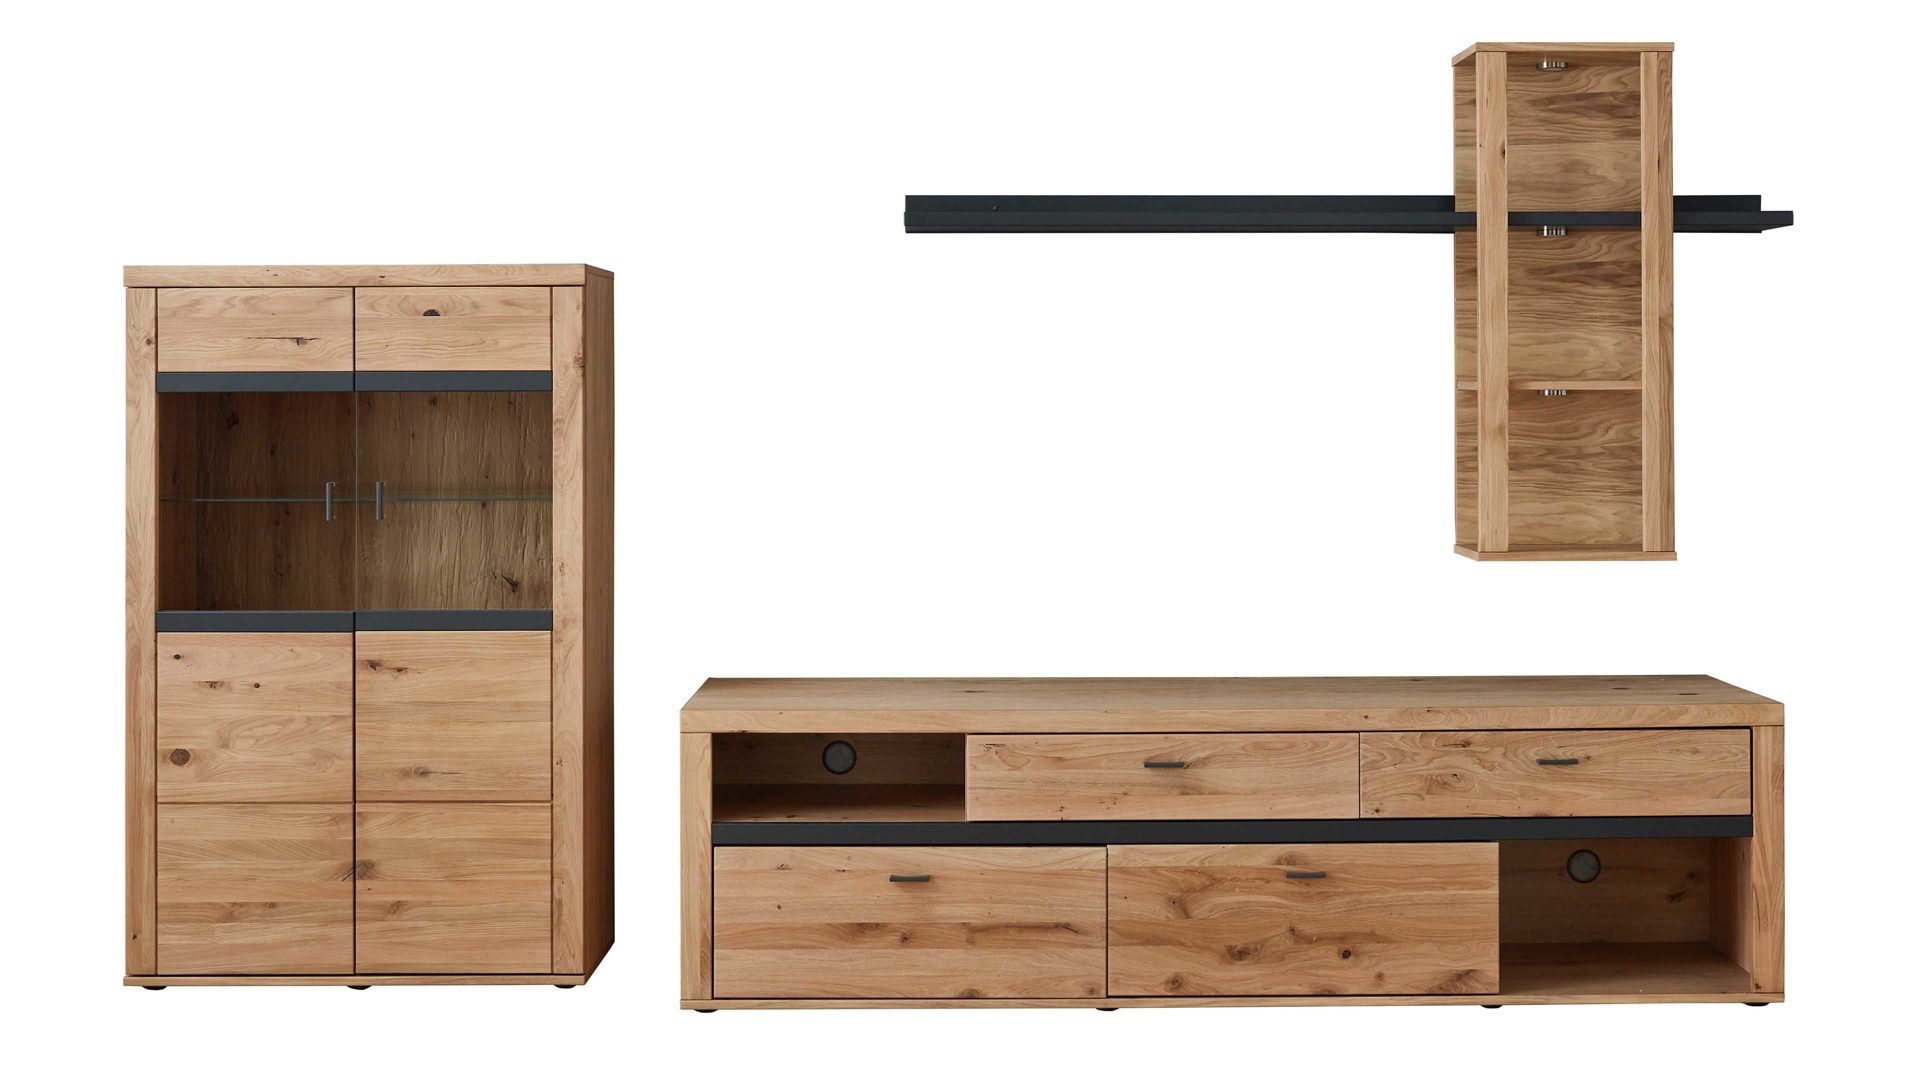 Wohnwand Ideal möbel aus Holz in Holzfarben Wohnprogramm Varas - Wohnwand Eiche & Asteiche & Grau